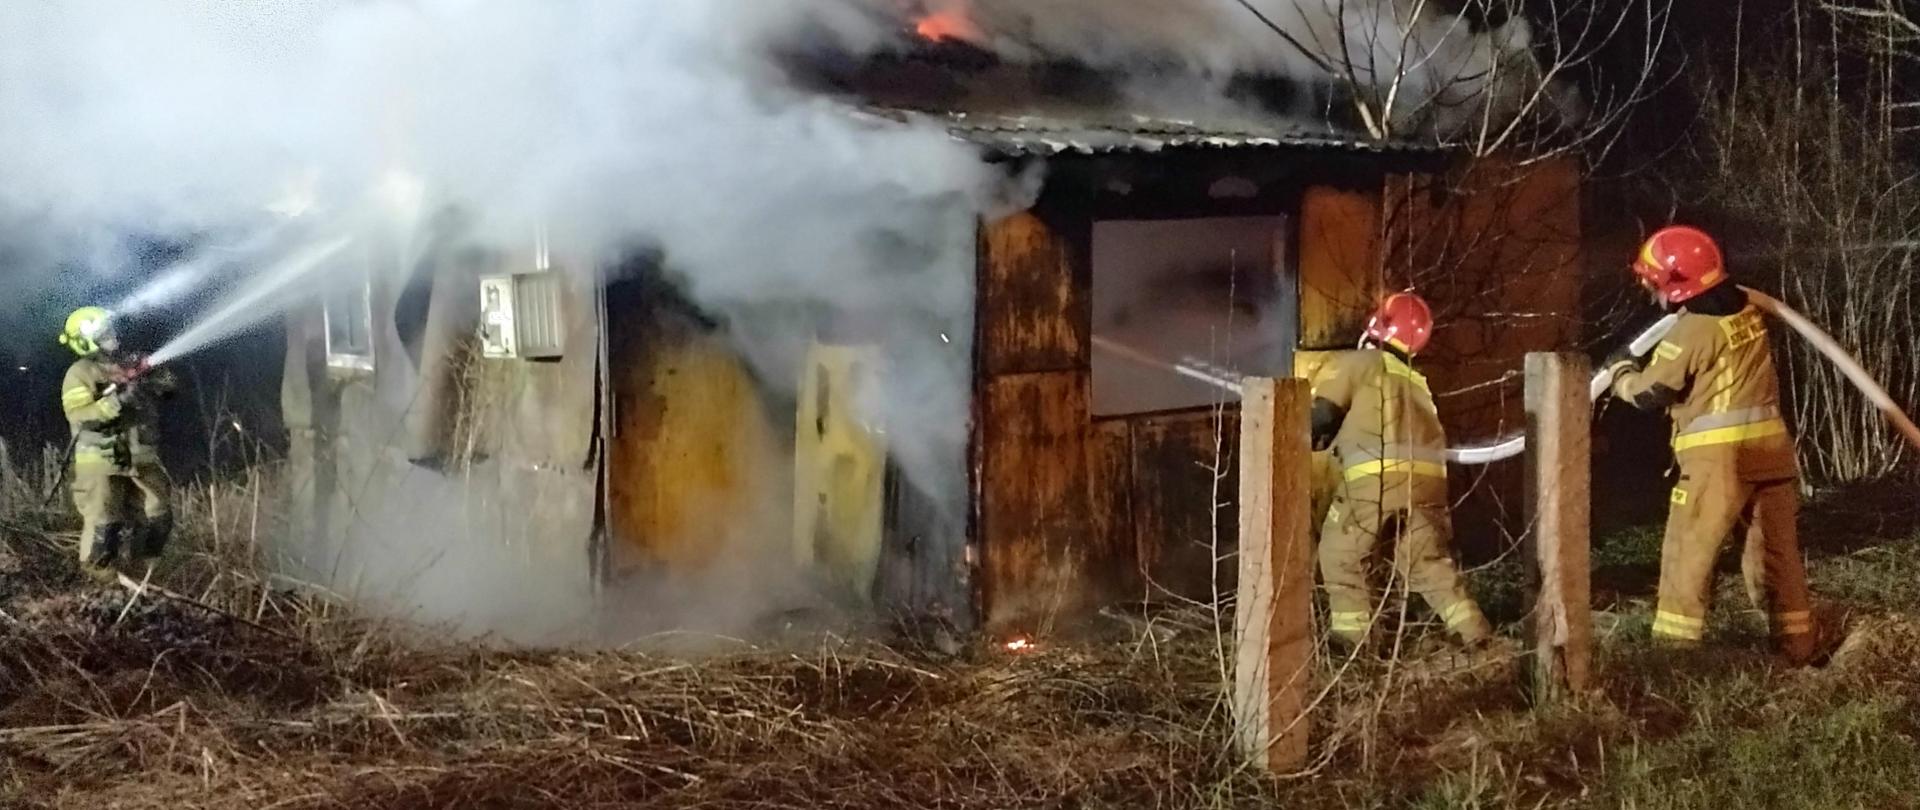 Płonący drewniany budynek, dym wydobywający się ze wszystkich otworów (okiennych, drzwiowych), trzech strażaków z liniami gaśniczymi, podaje wodę na pożar. 